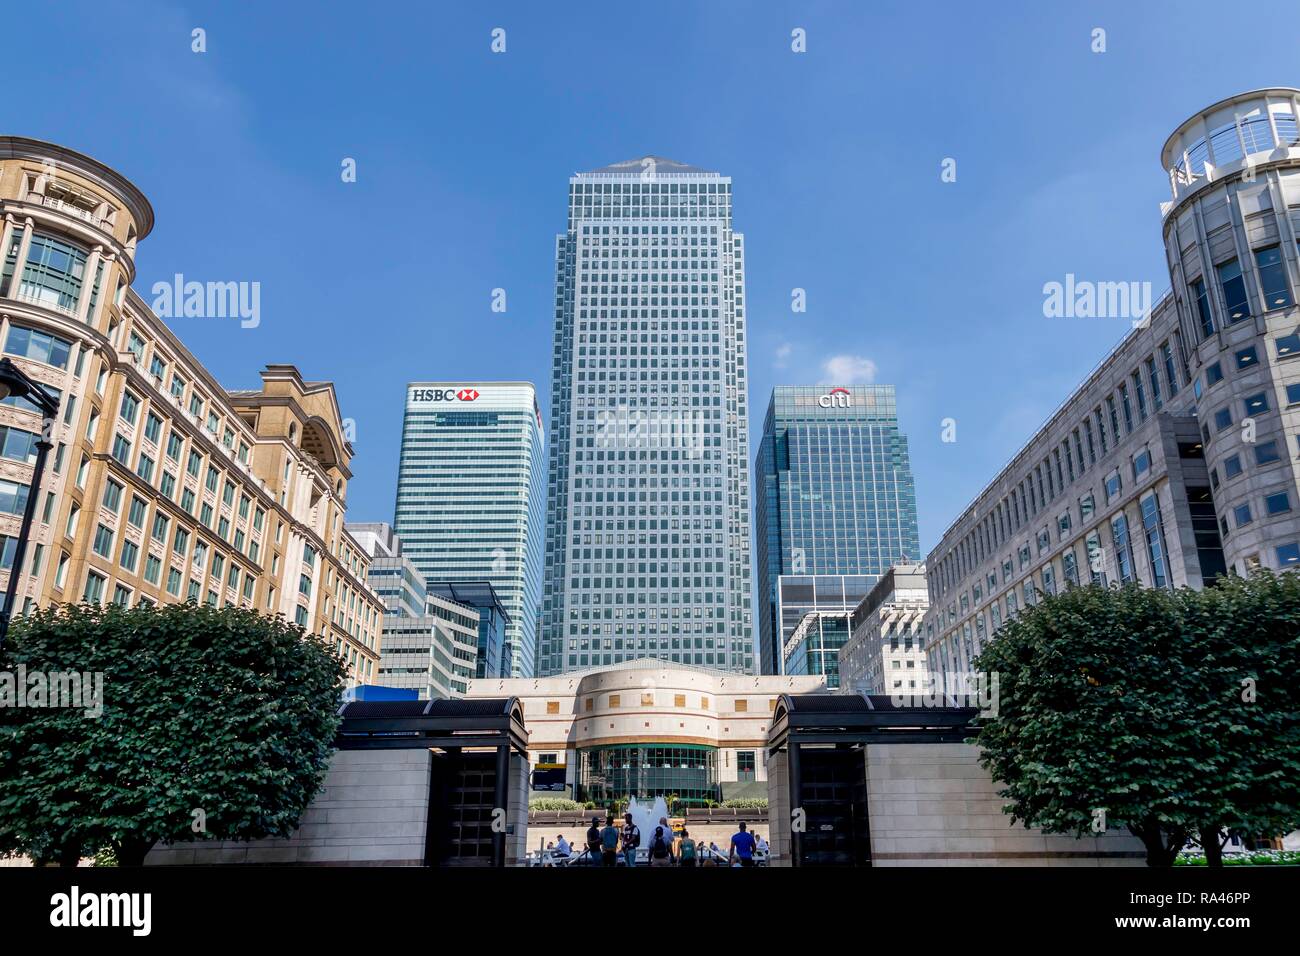 Canary Wharf Tower, sede del Banco Citi en Citigroup y la sede central del banco HSBC, bancario y financiero Foto de stock